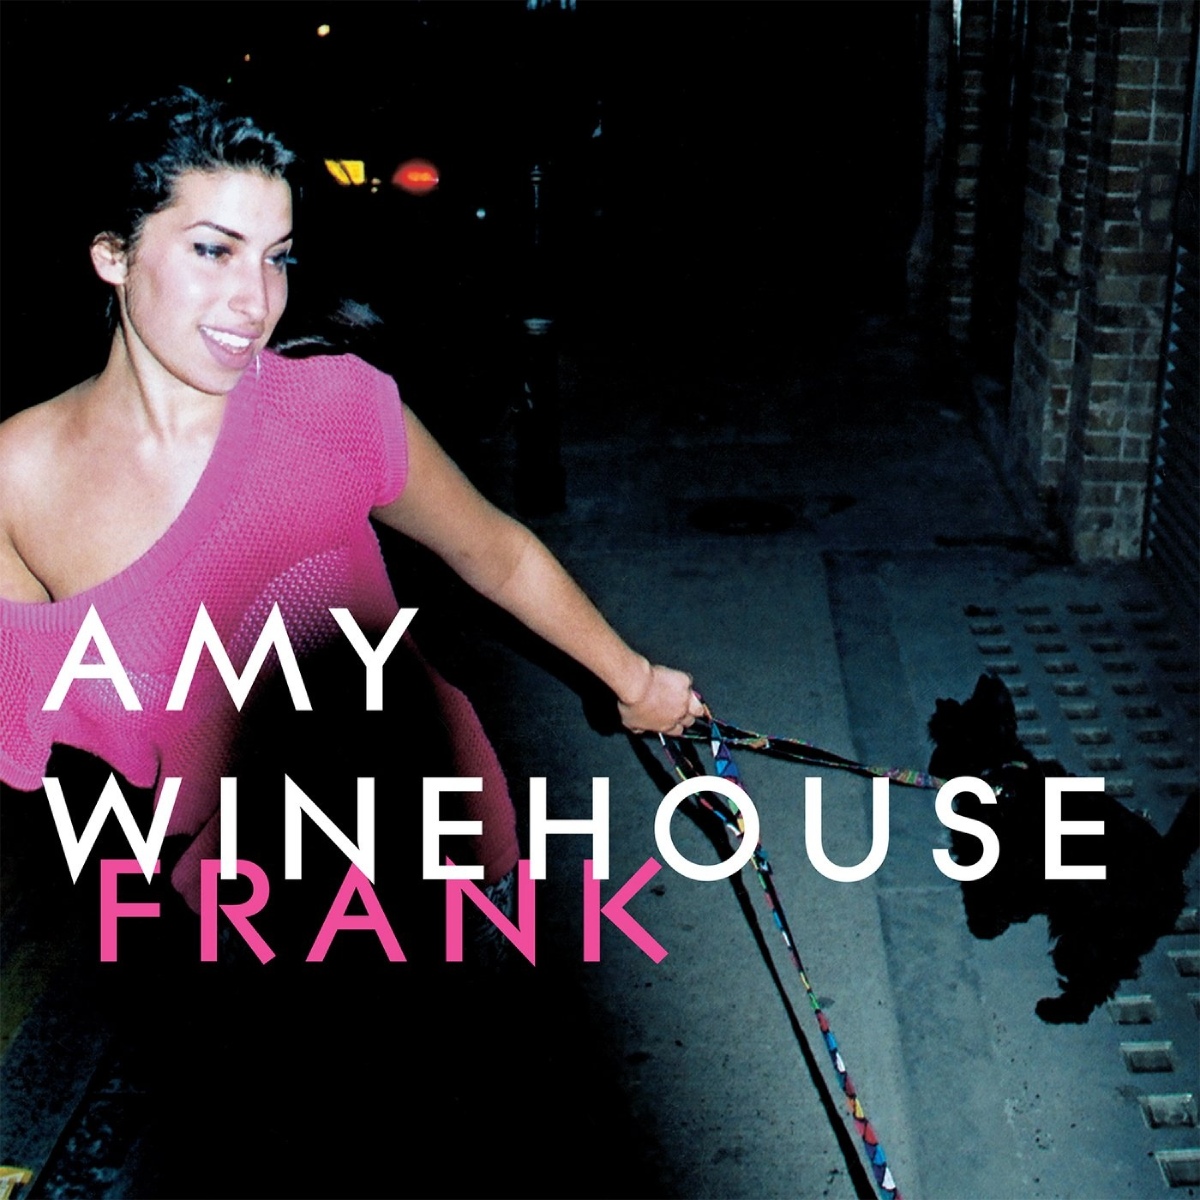 Capa do álbum "Frank" da Amy Winehouse